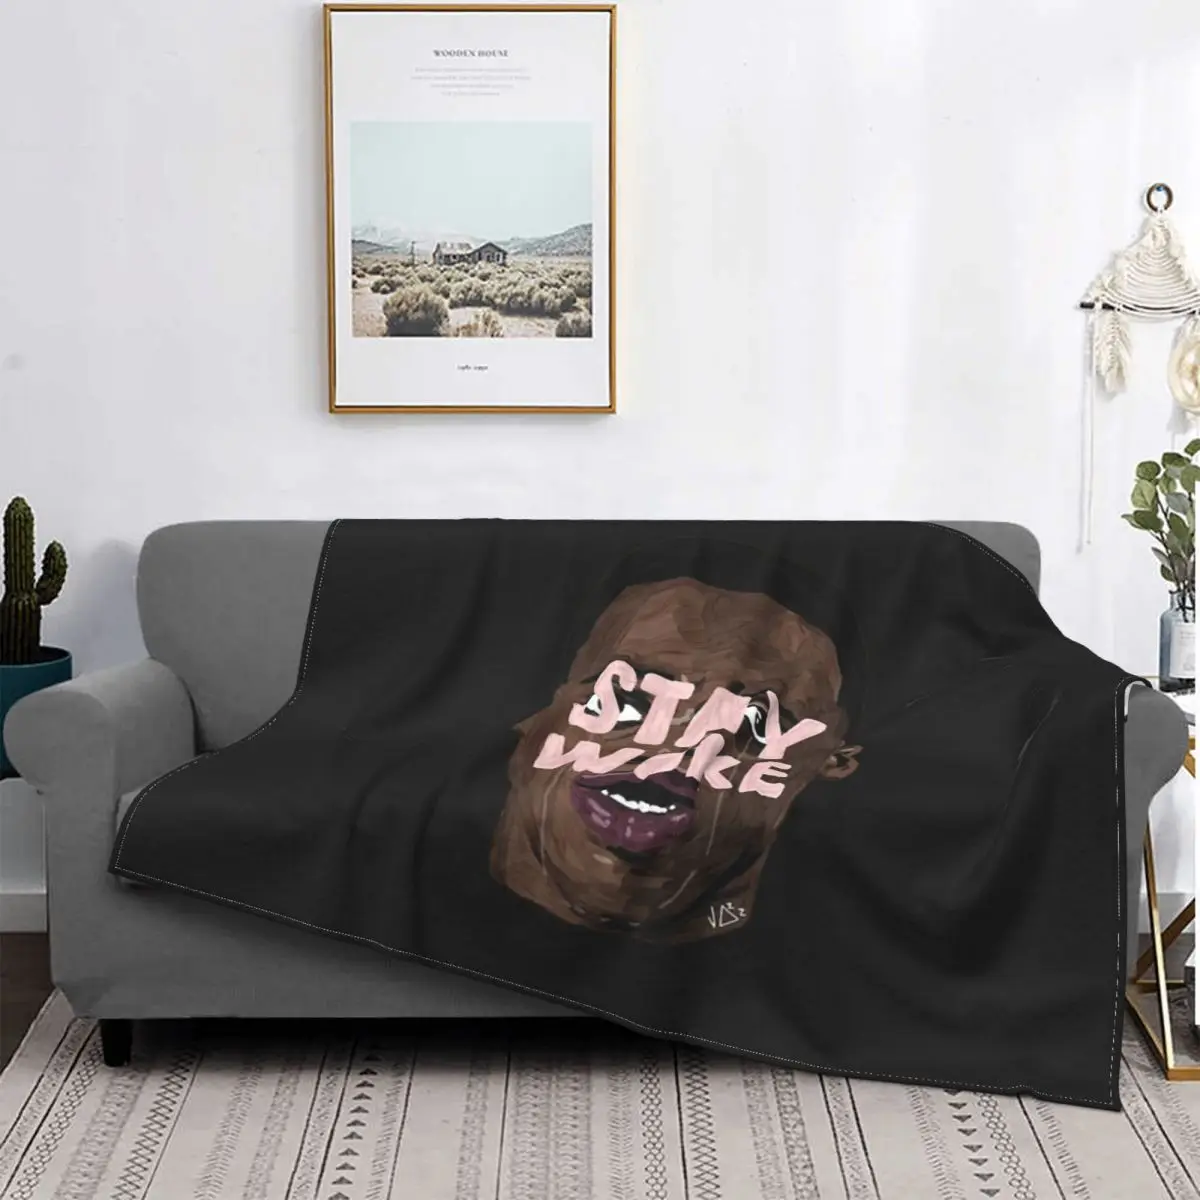 

Одеяло с надписью «STAY Wake», покрывало для кровати, Клетчатое одеяло для пикника, клетчатое Флисовое одеяло, пляжное полотенце, роскошное